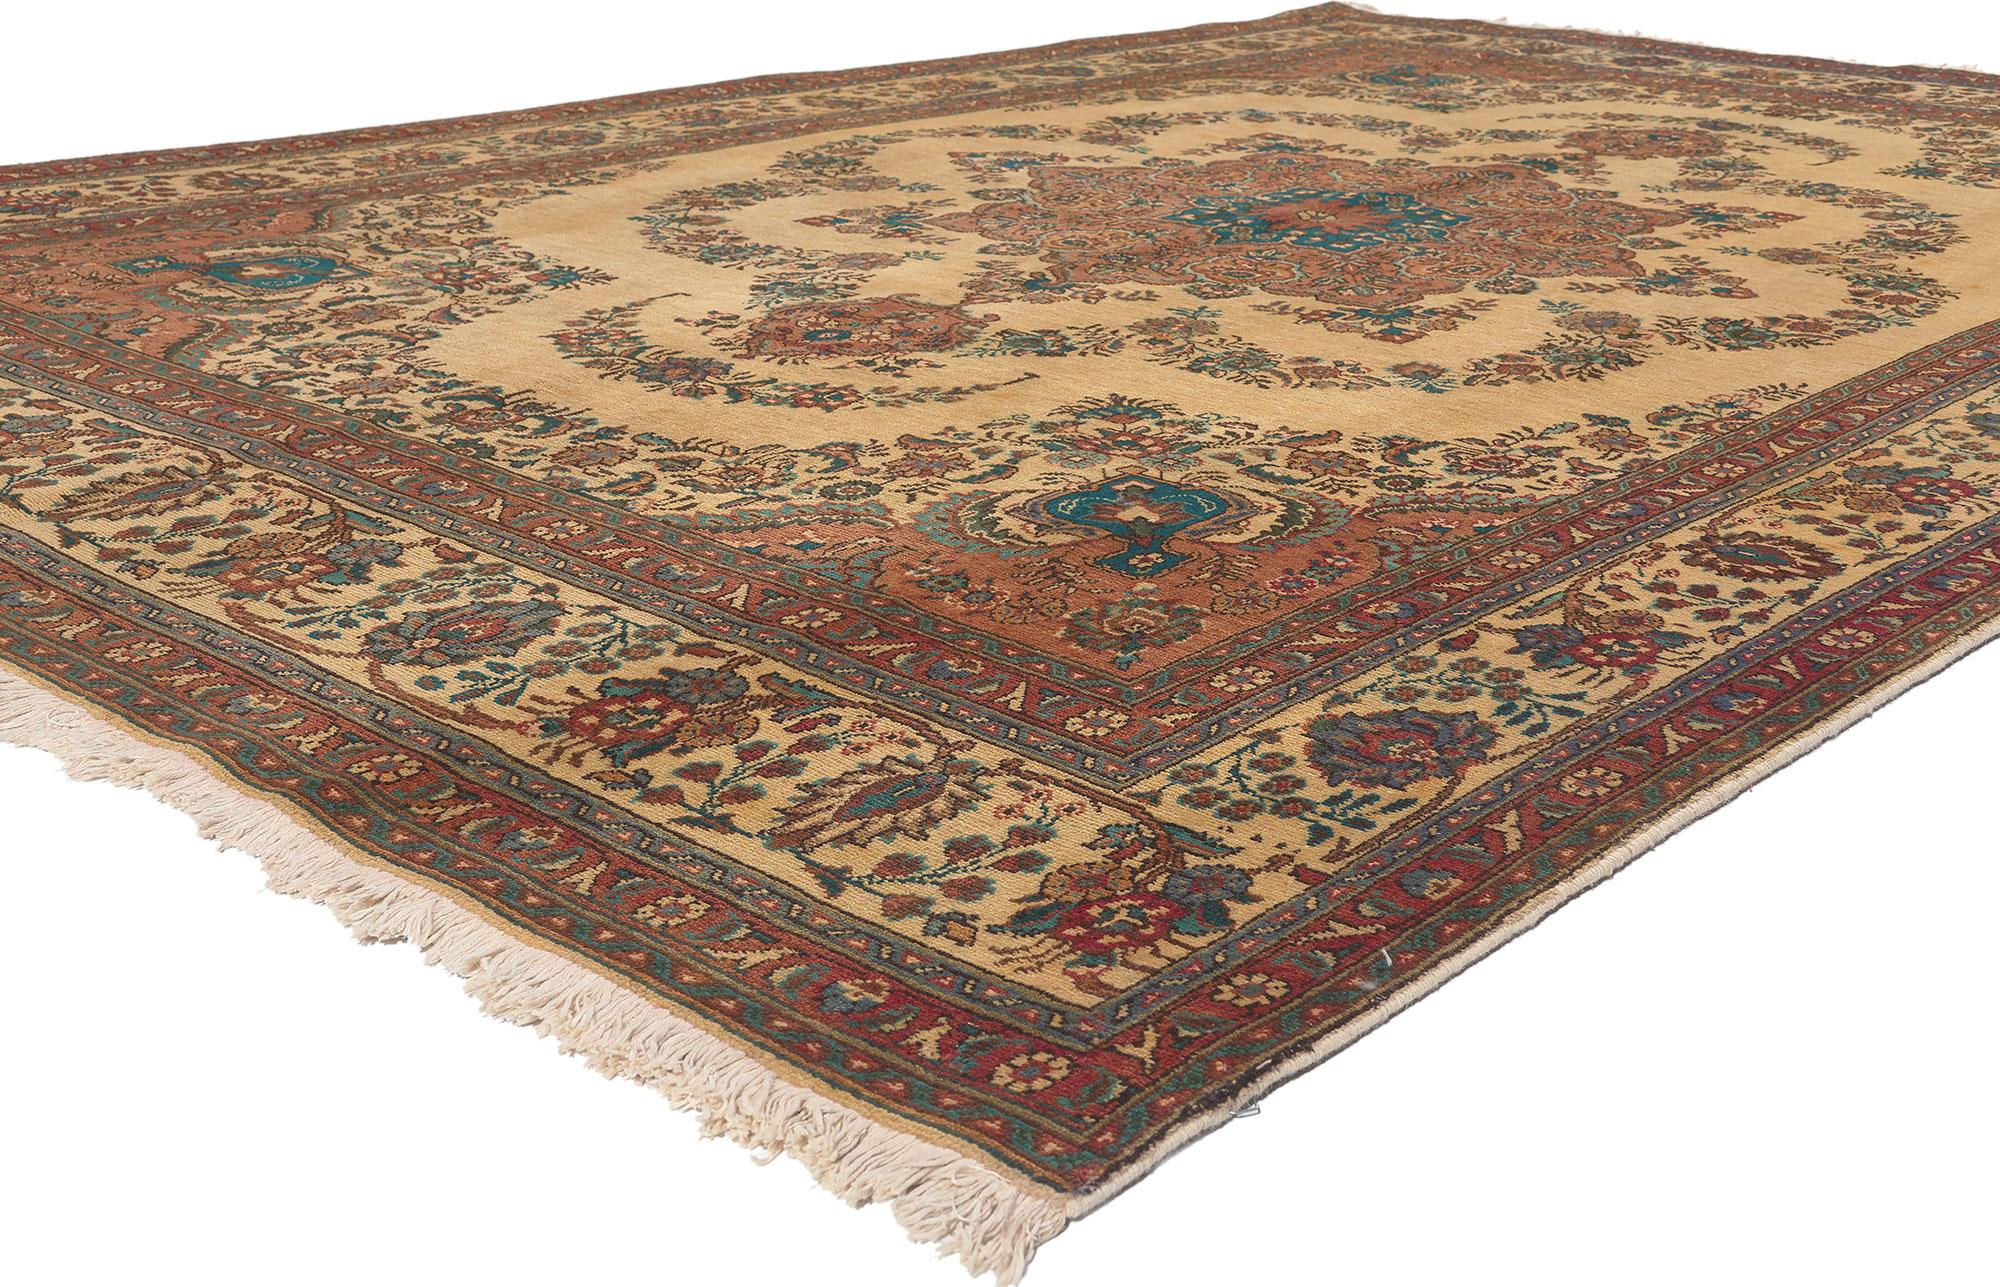 76361, tapis persan vintage Tabriz avec style toscan romantique. Ce tapis Tabriz persan vintage en laine nouée à la main présente un médaillon central cuspidé encadré d'une guirlande composée de frondes opulentes et de fleurs stylisées. Elle est